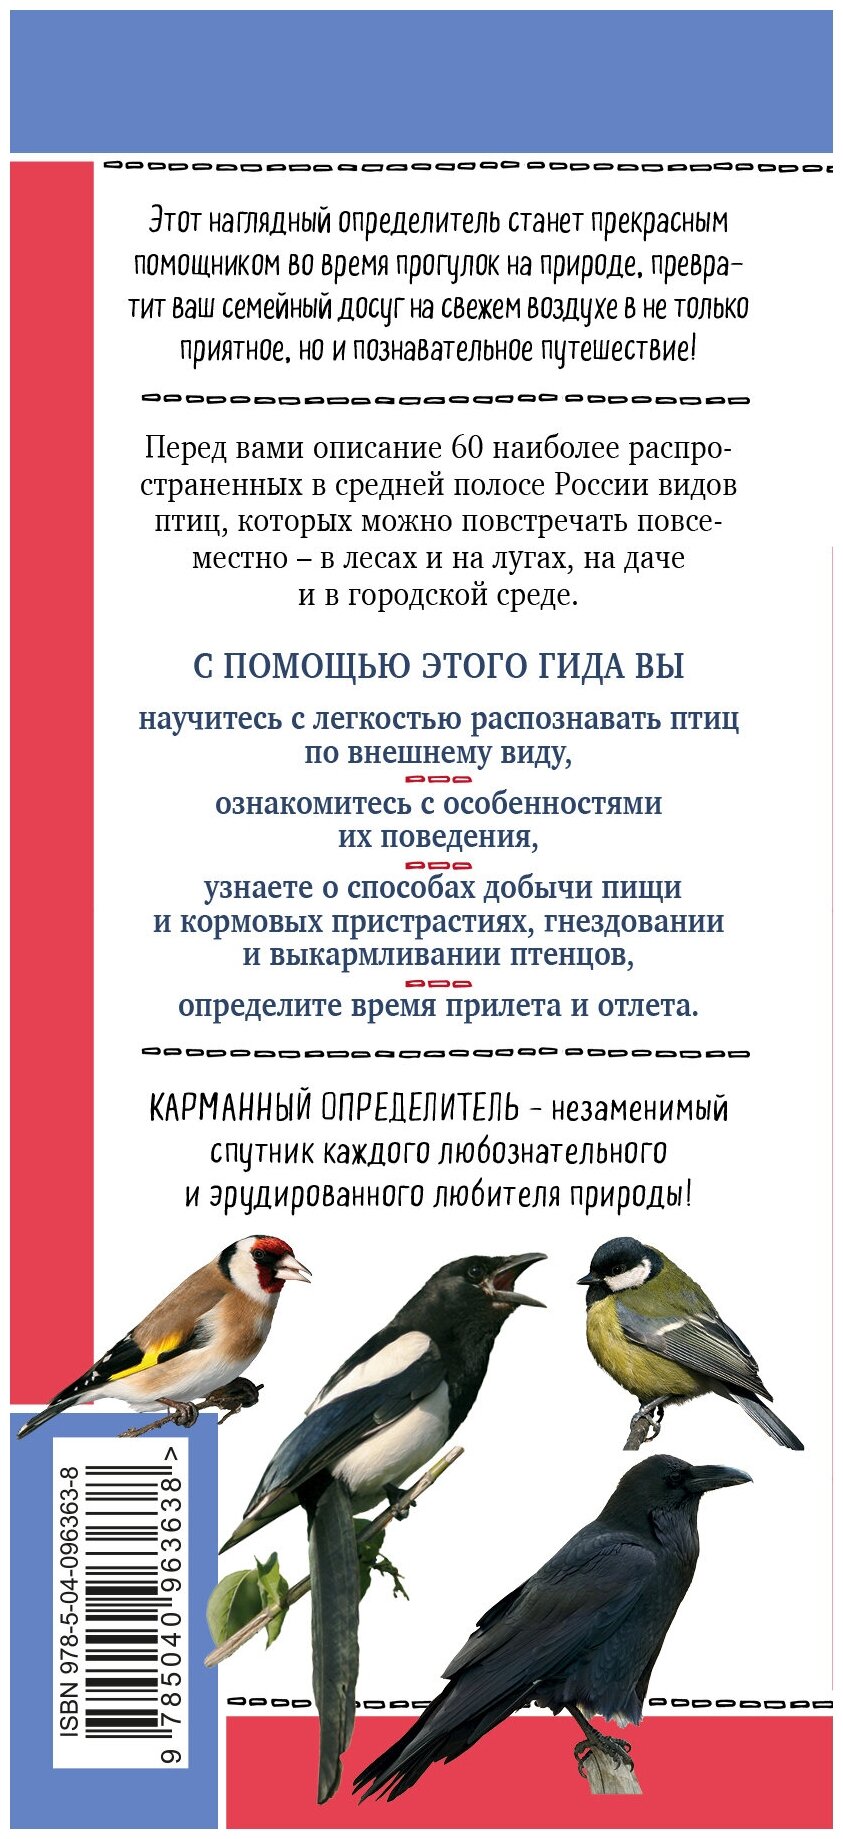 Птицы России. Наглядный карманный определитель - фото №2